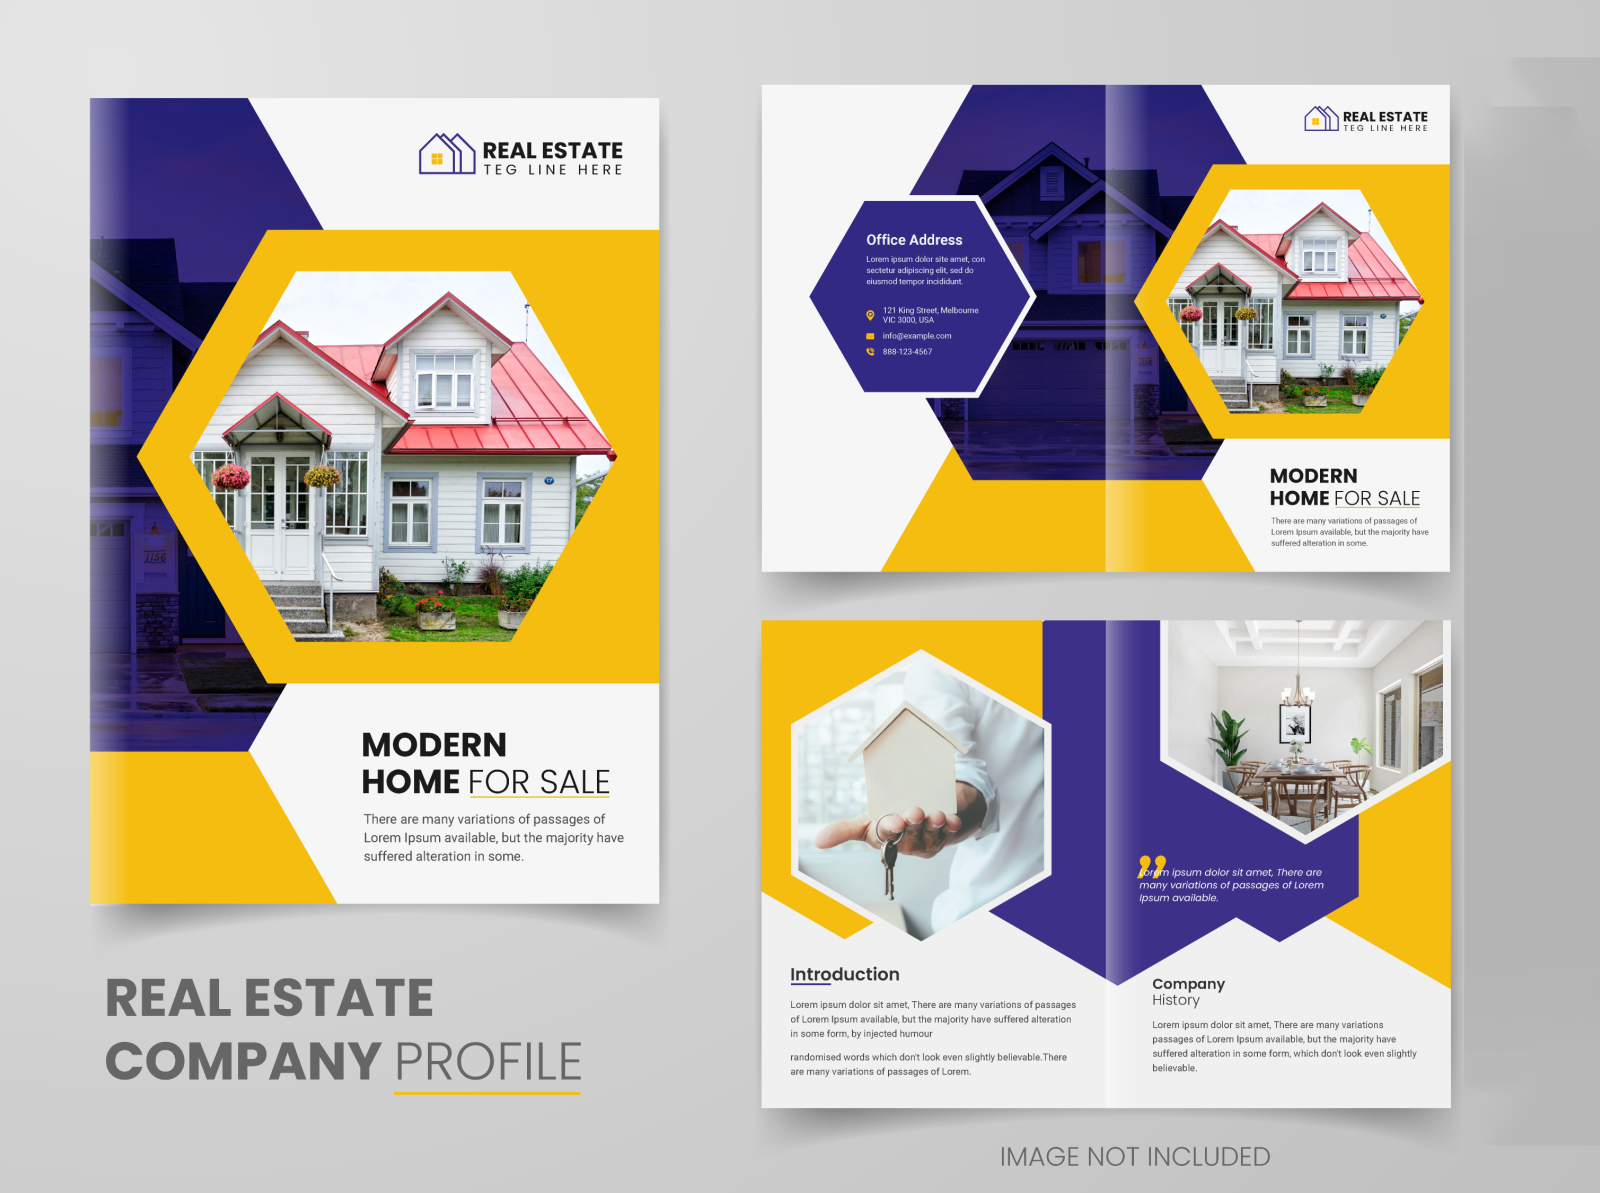 real estate company profile presentation free download